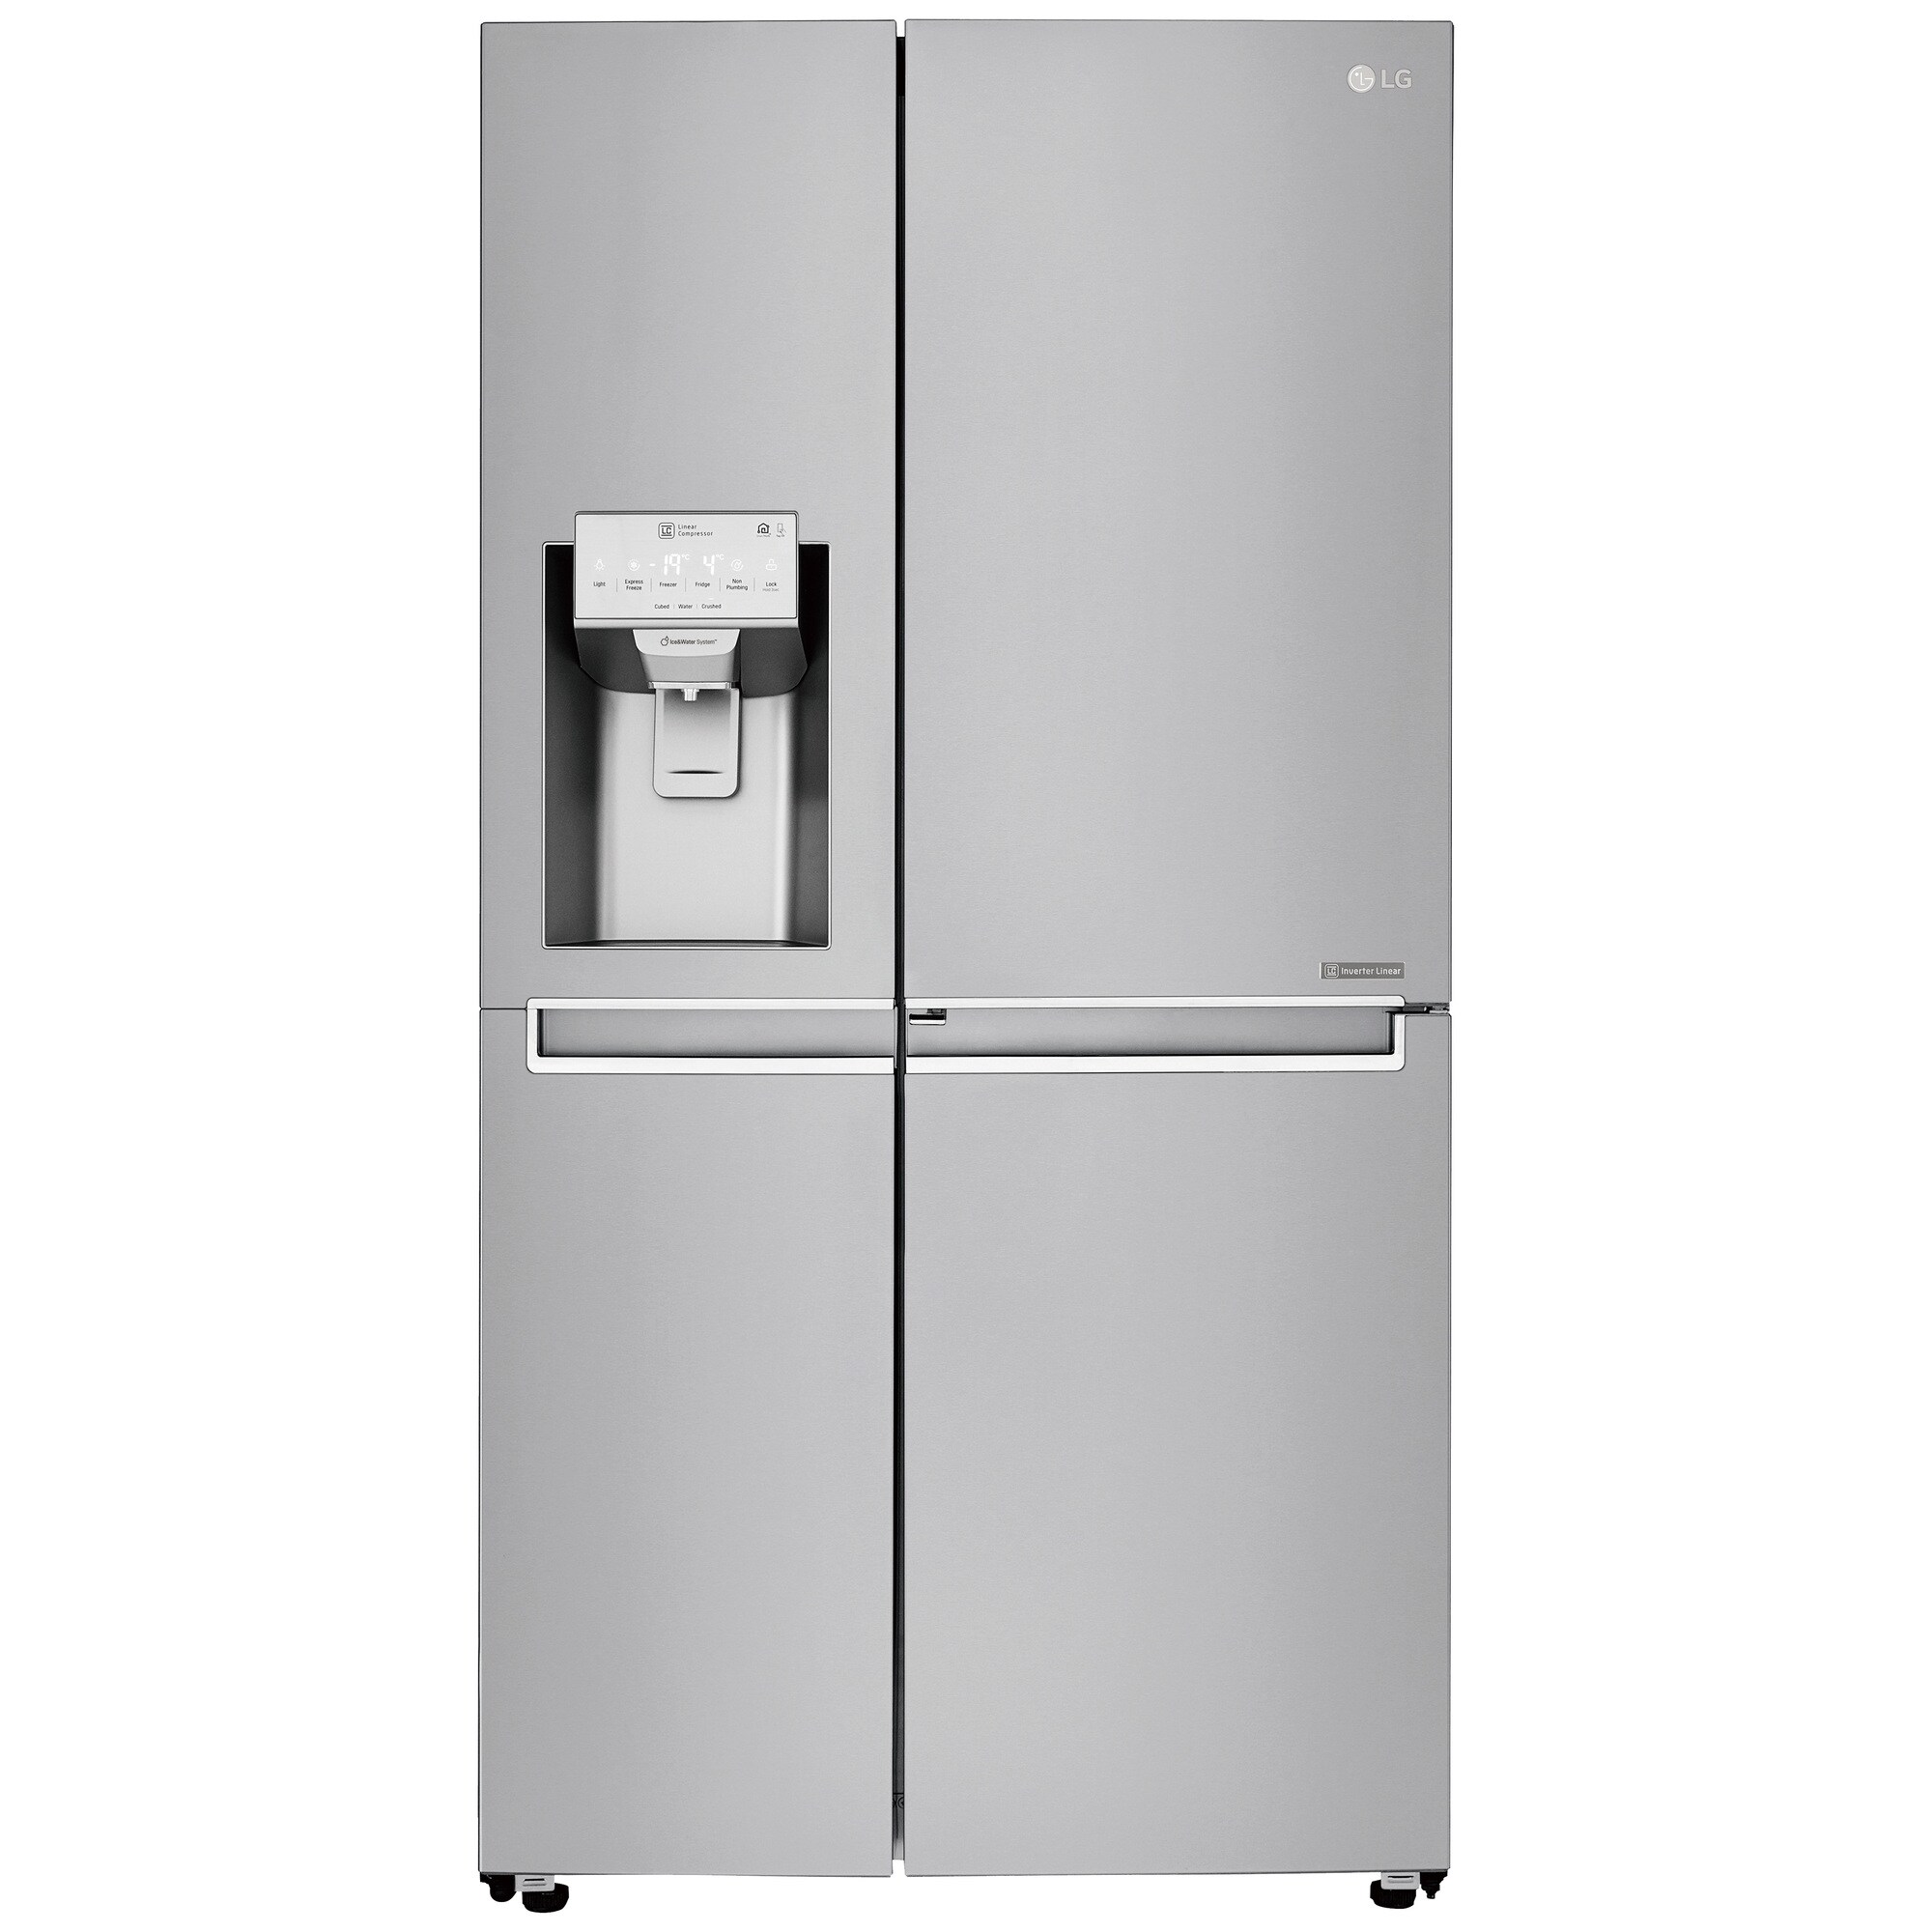 Kjøleskap med fryser - side-by-side - Elkjøp